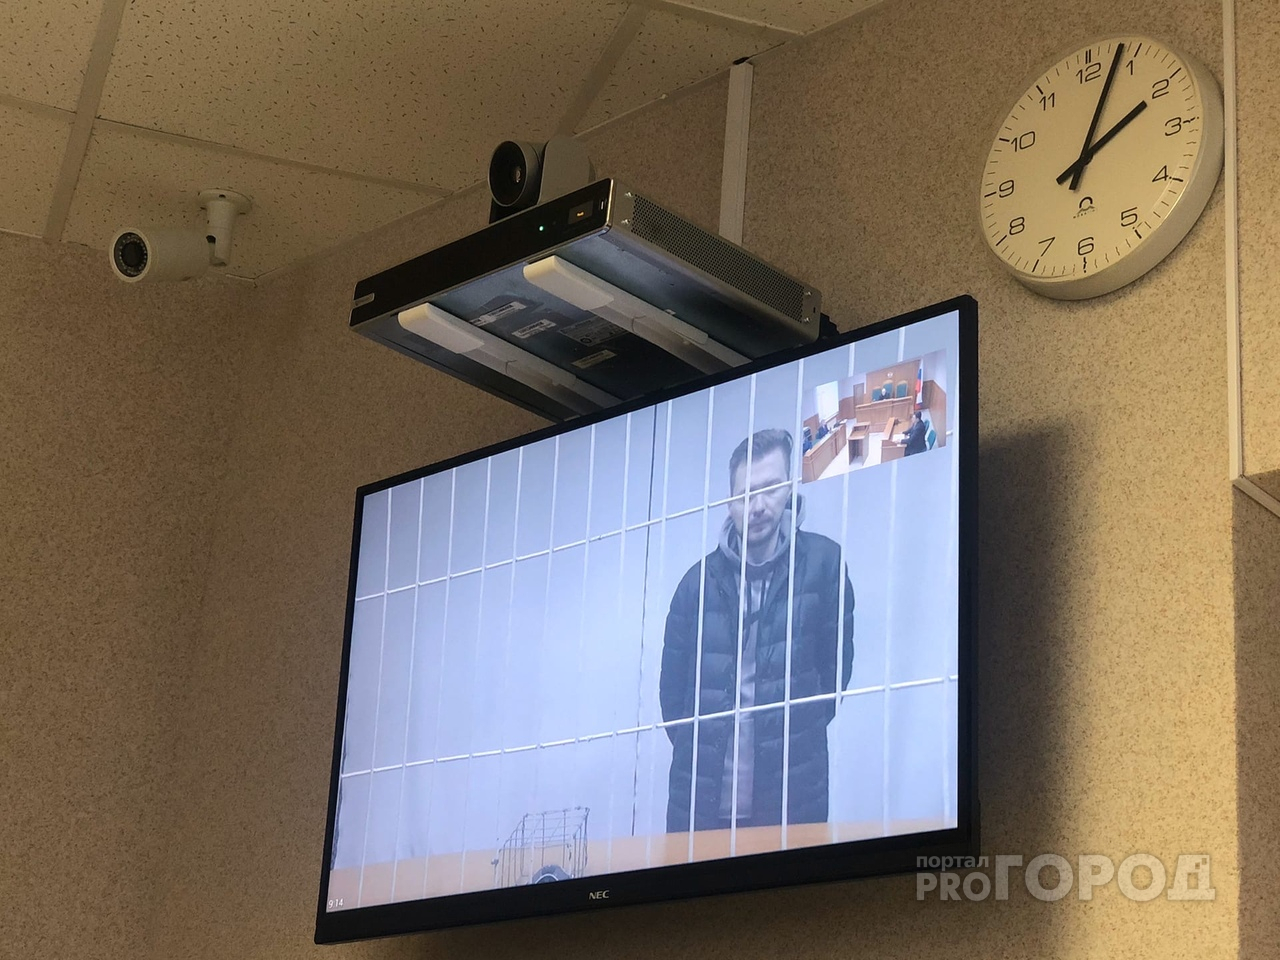 Арестованный заммэра Ярославля Бадаев: "Никаких денег я не брал"